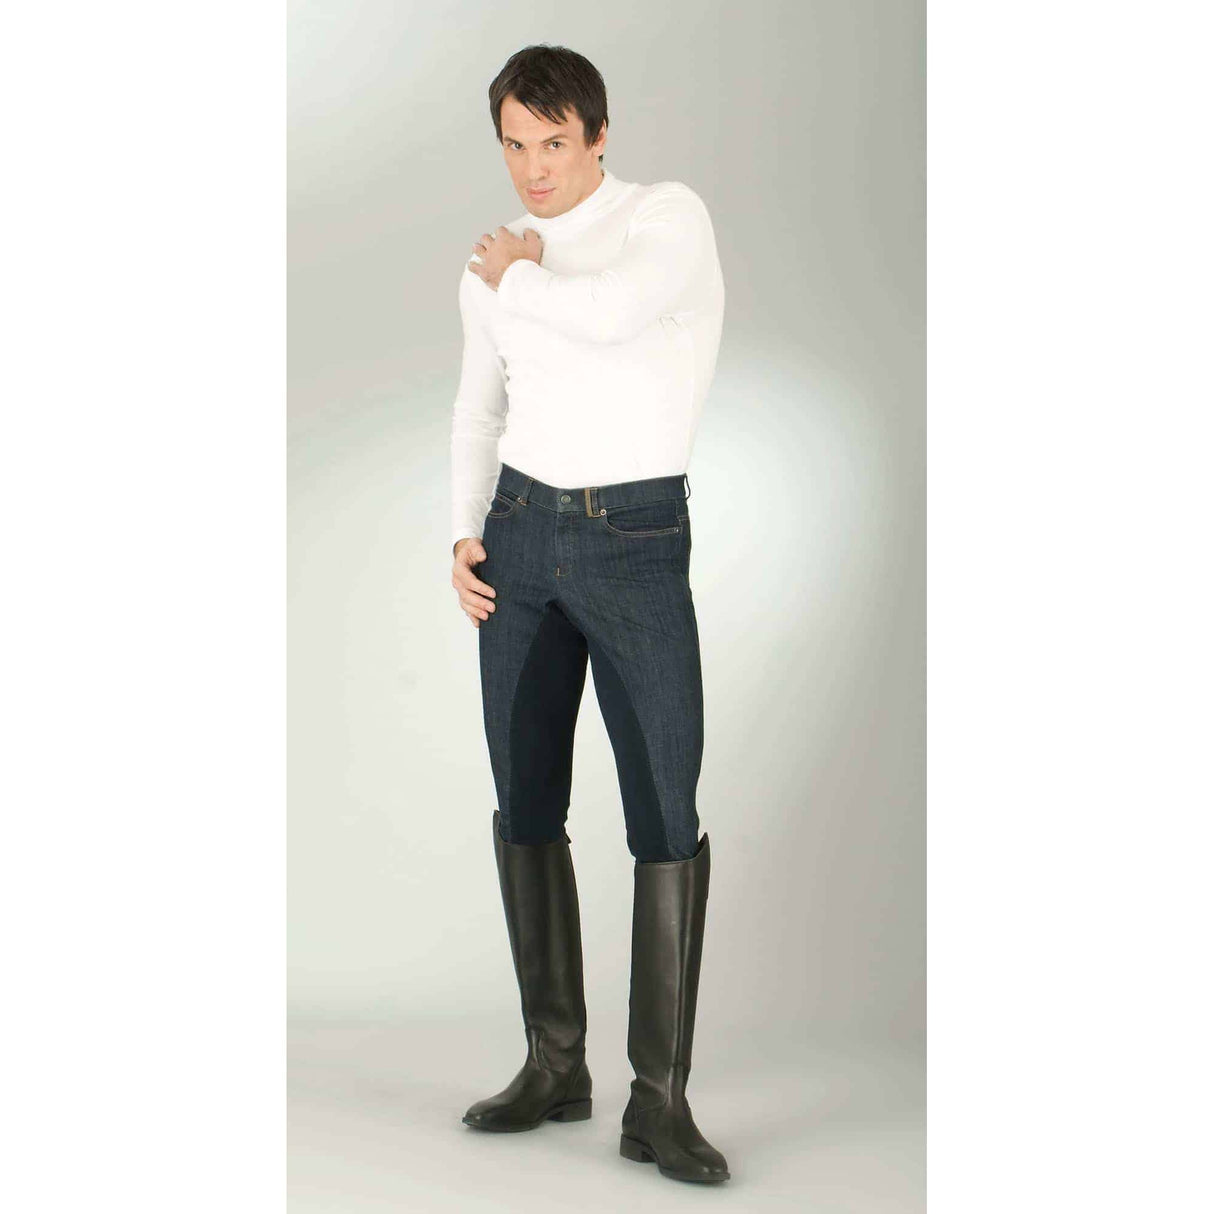 Covalliero Equitazione Pantaloni Jeans Per Gli Uomini